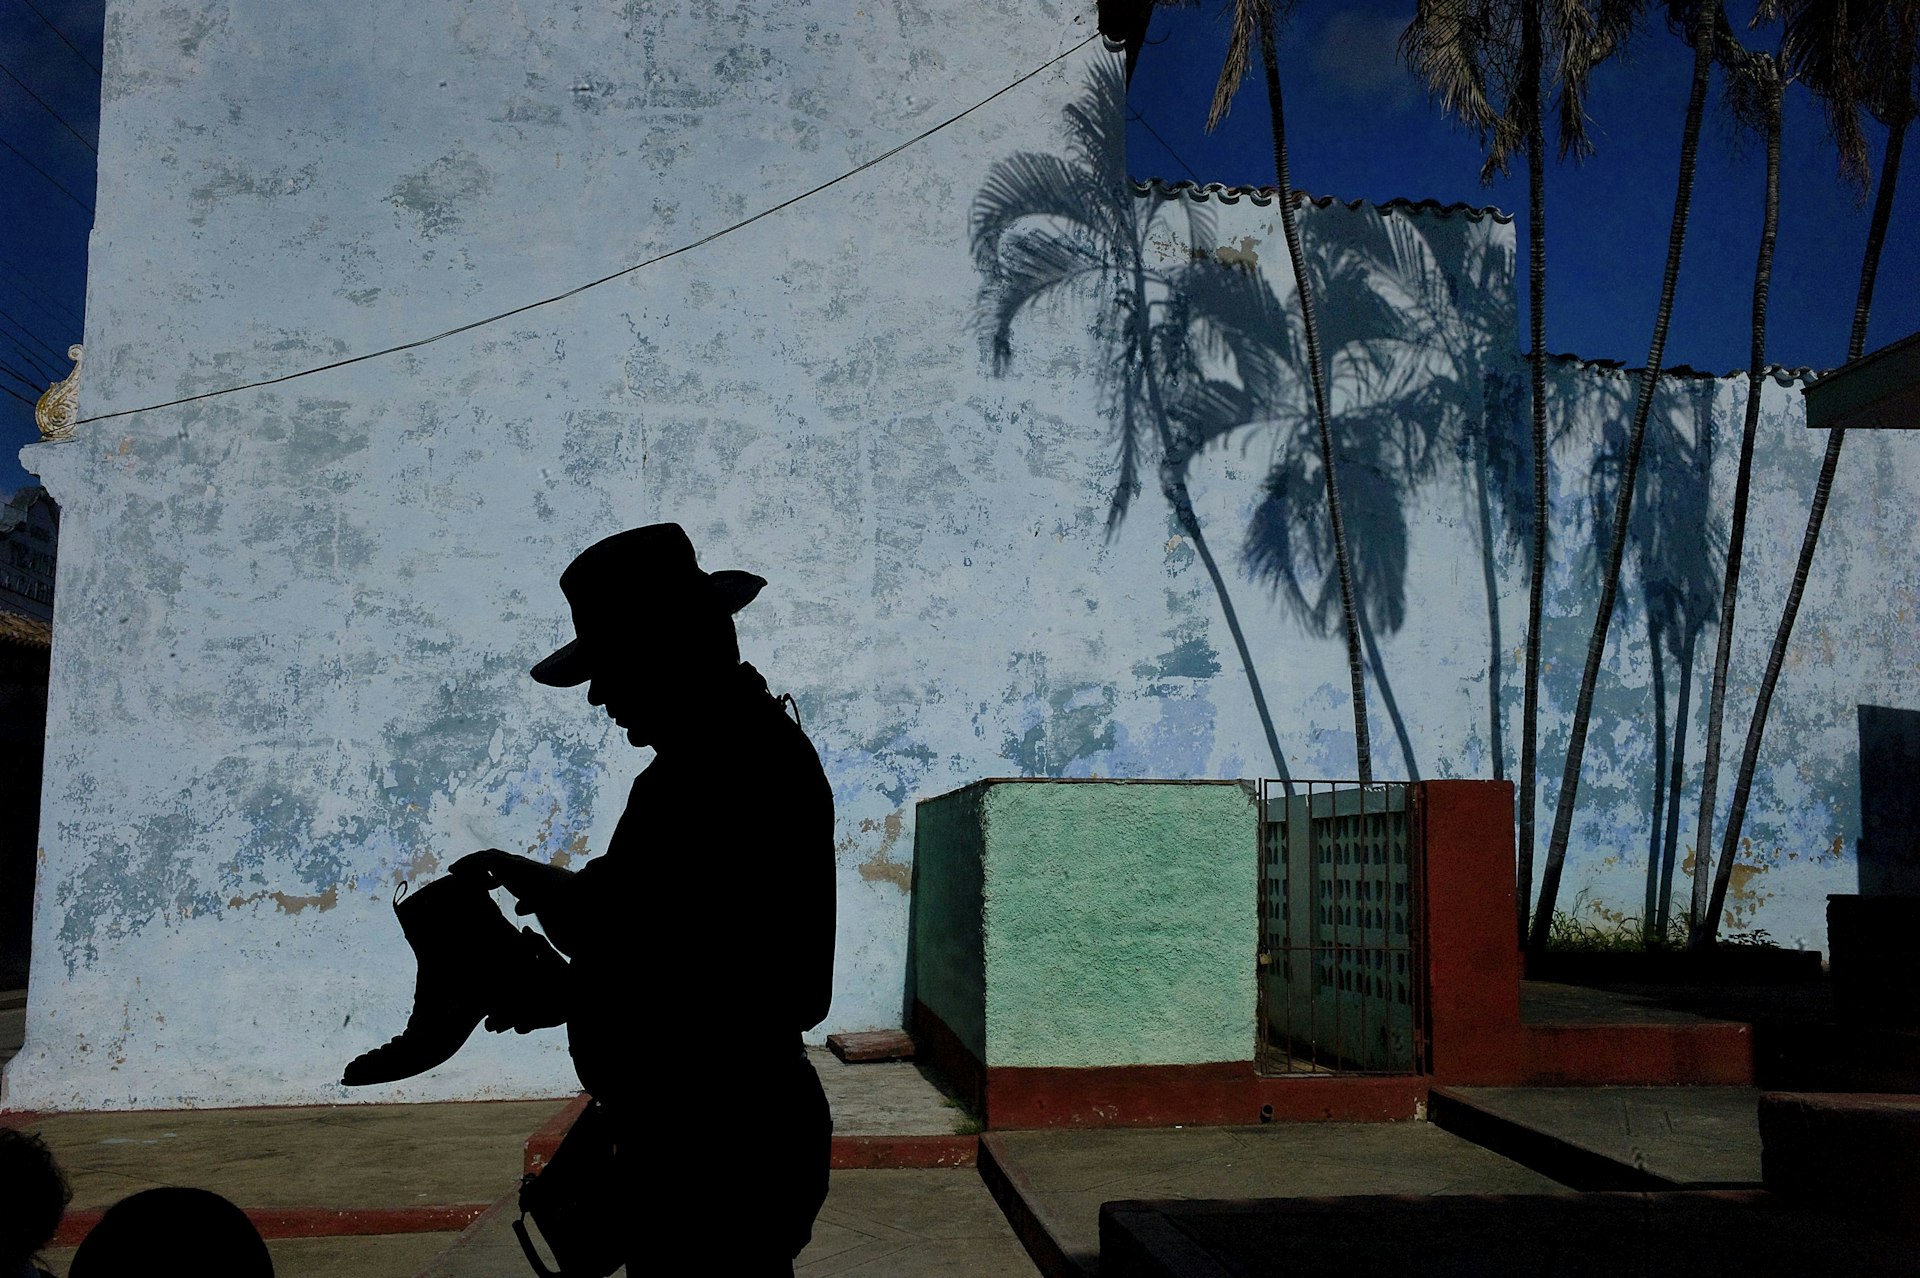 Trinidad, Cuba. 2015 © Nikos Economopoulos / Magnum Photos